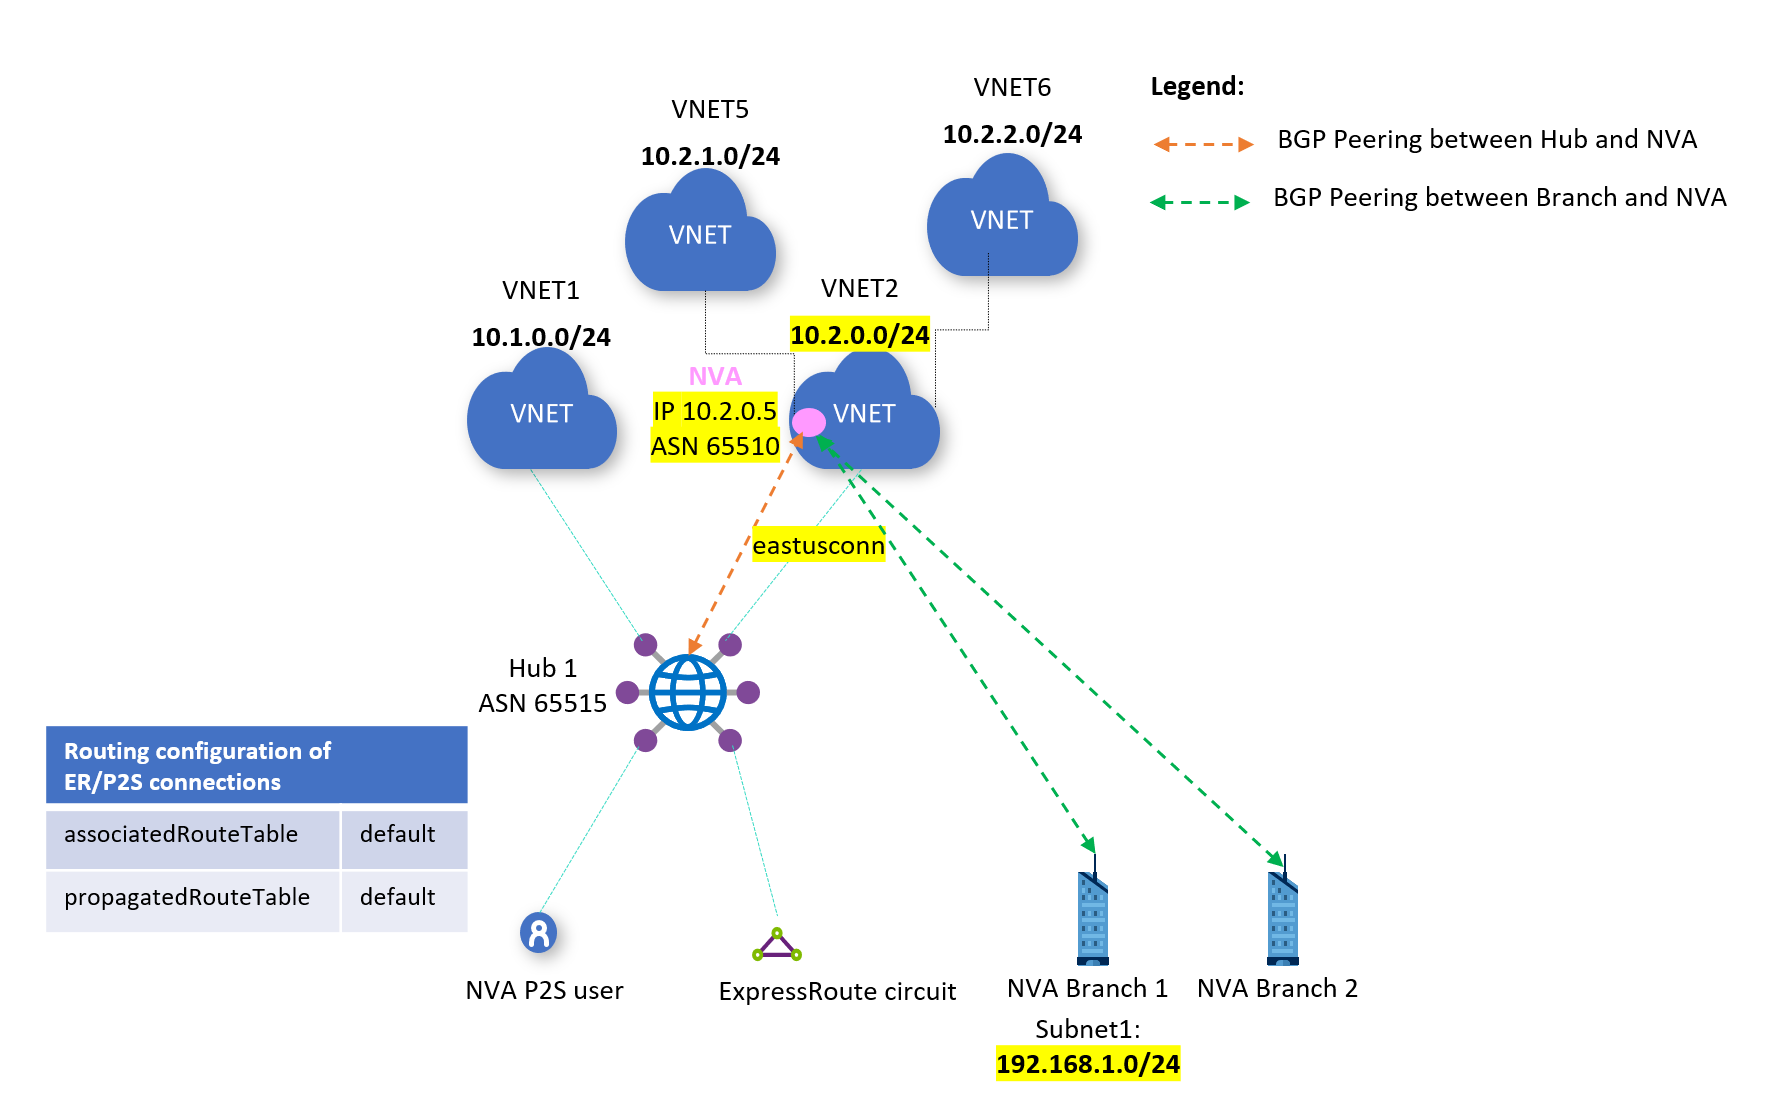 Изображение с маршрутизацией между филиалом и виртуальной сетью.